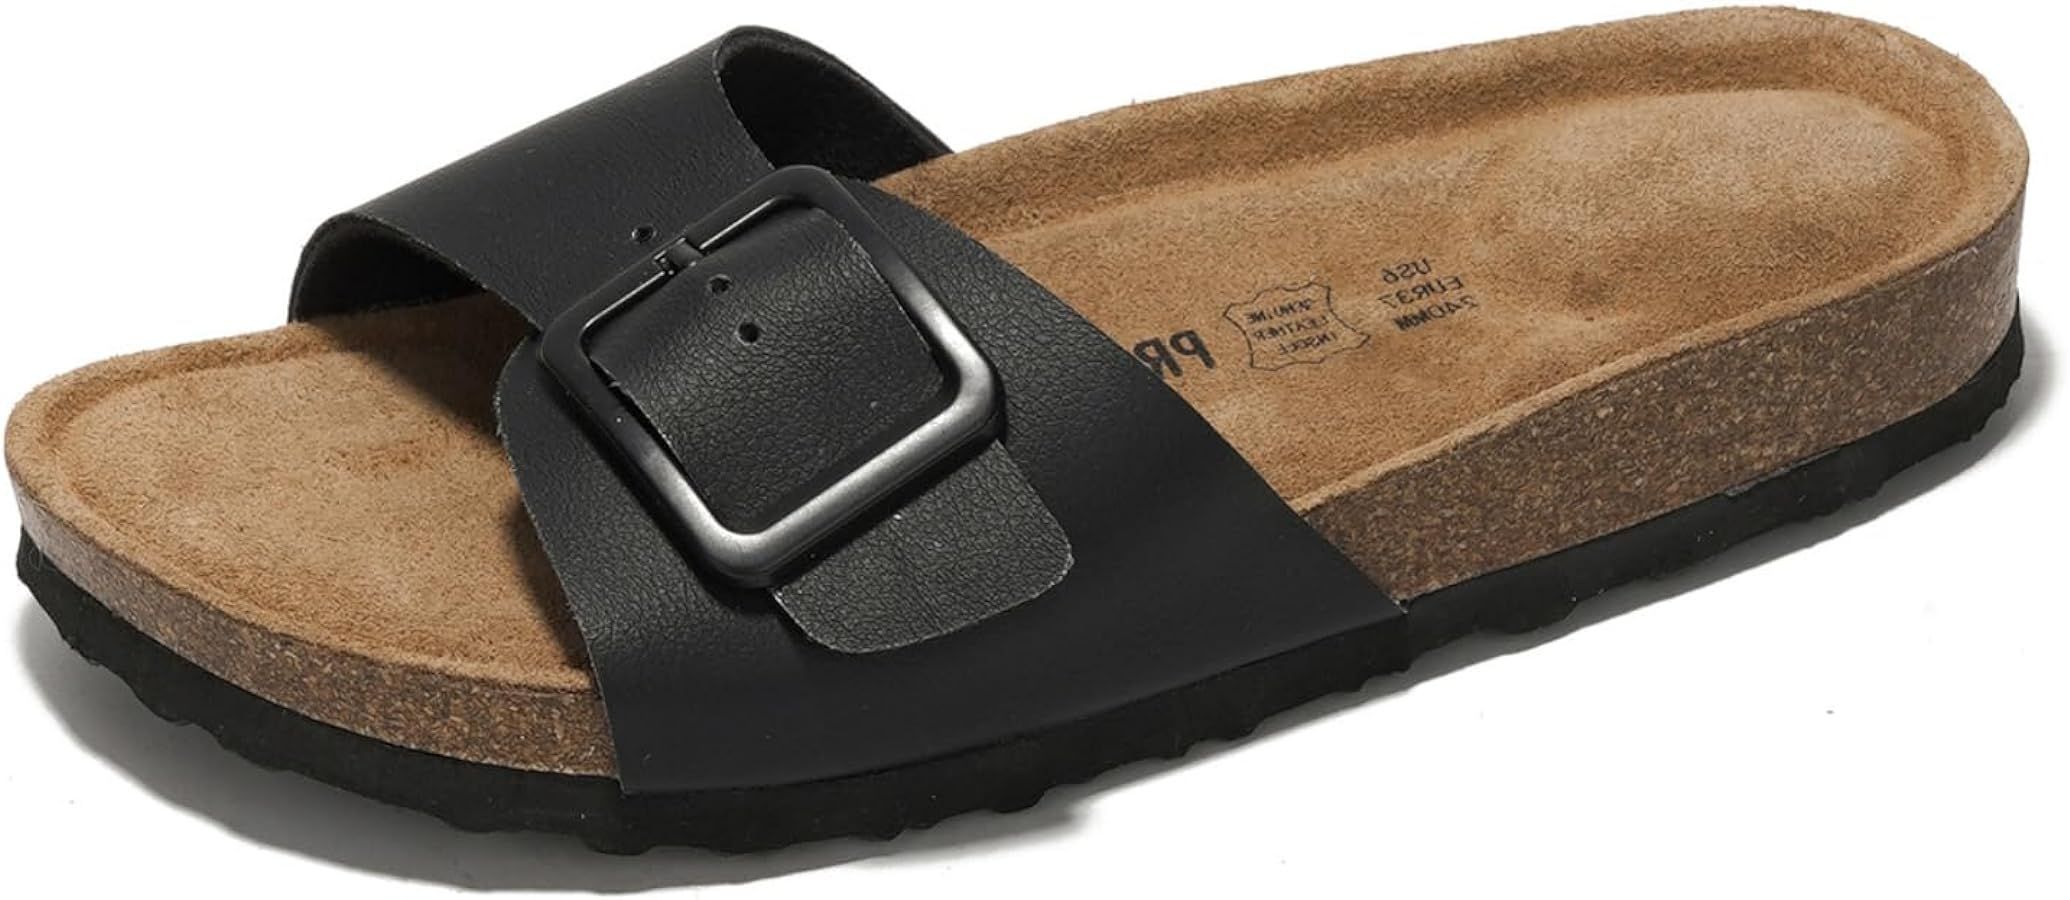 Sandals Women Dressy Summer Beach Essentials - 100% Genuine Leather Flip Flops & Slides for Women... | Amazon (US)